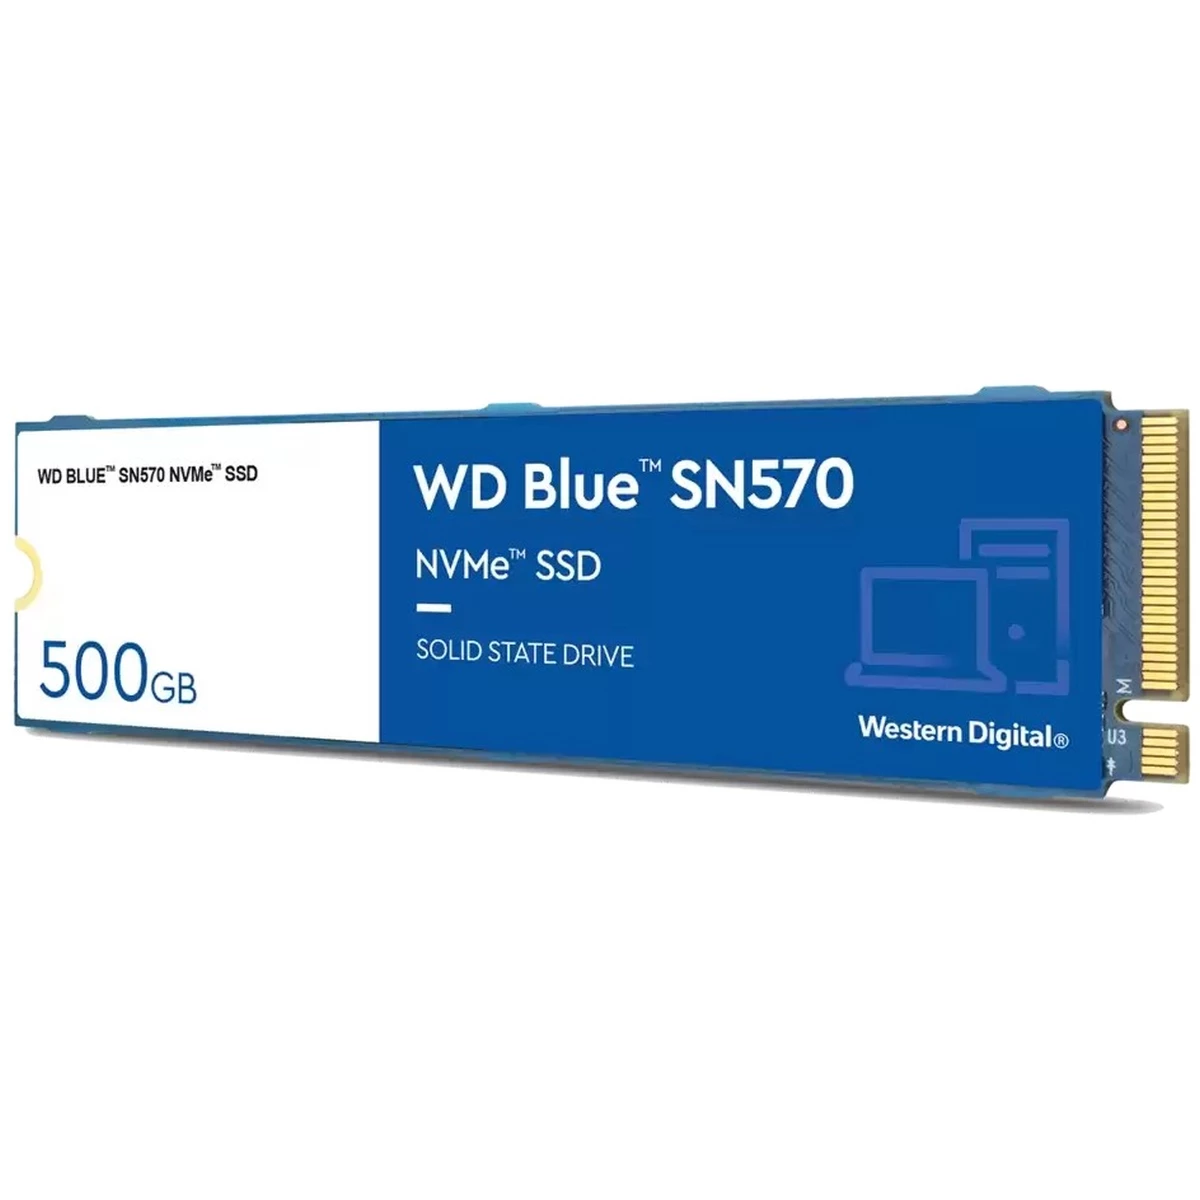 SSD M.2 500GB WD Blue SN570 NVMe PCIe 3.0 x 4